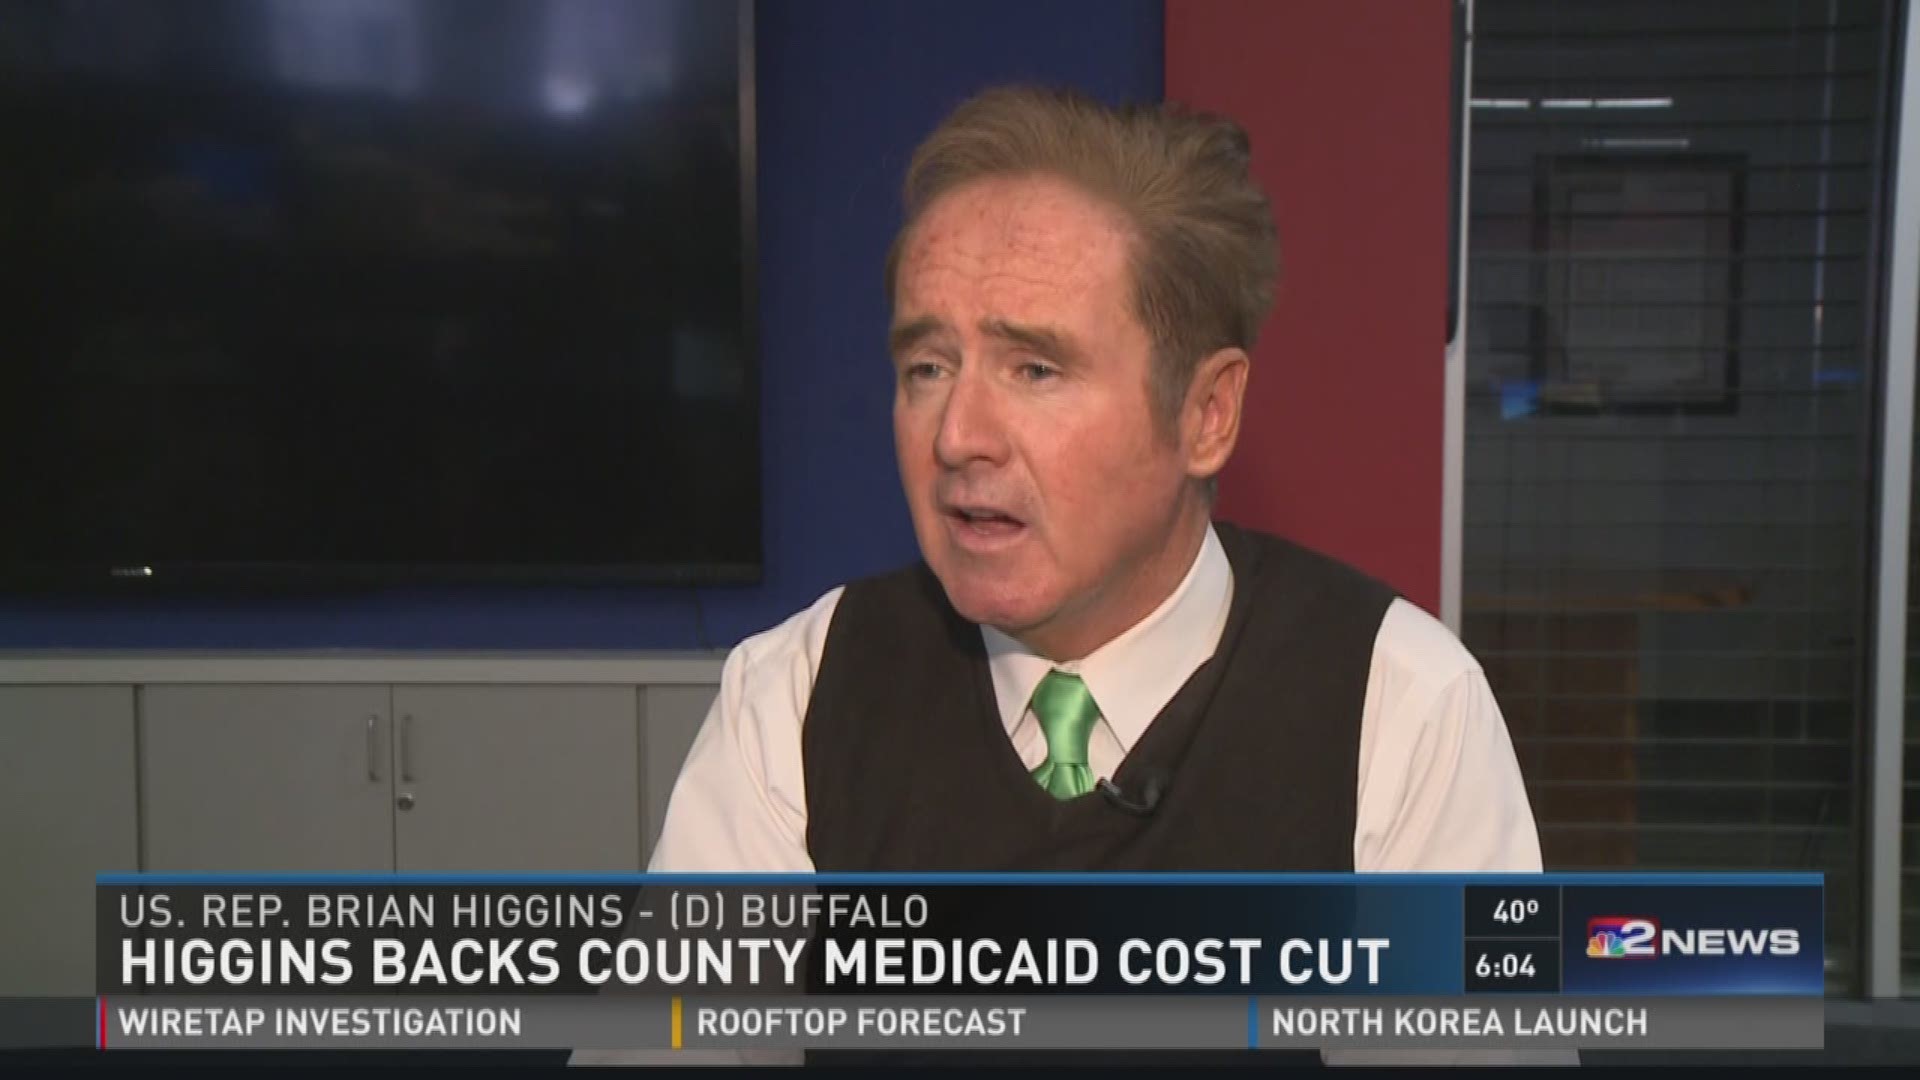 Rep. Higgins Backs County Medicaid Cost Cut